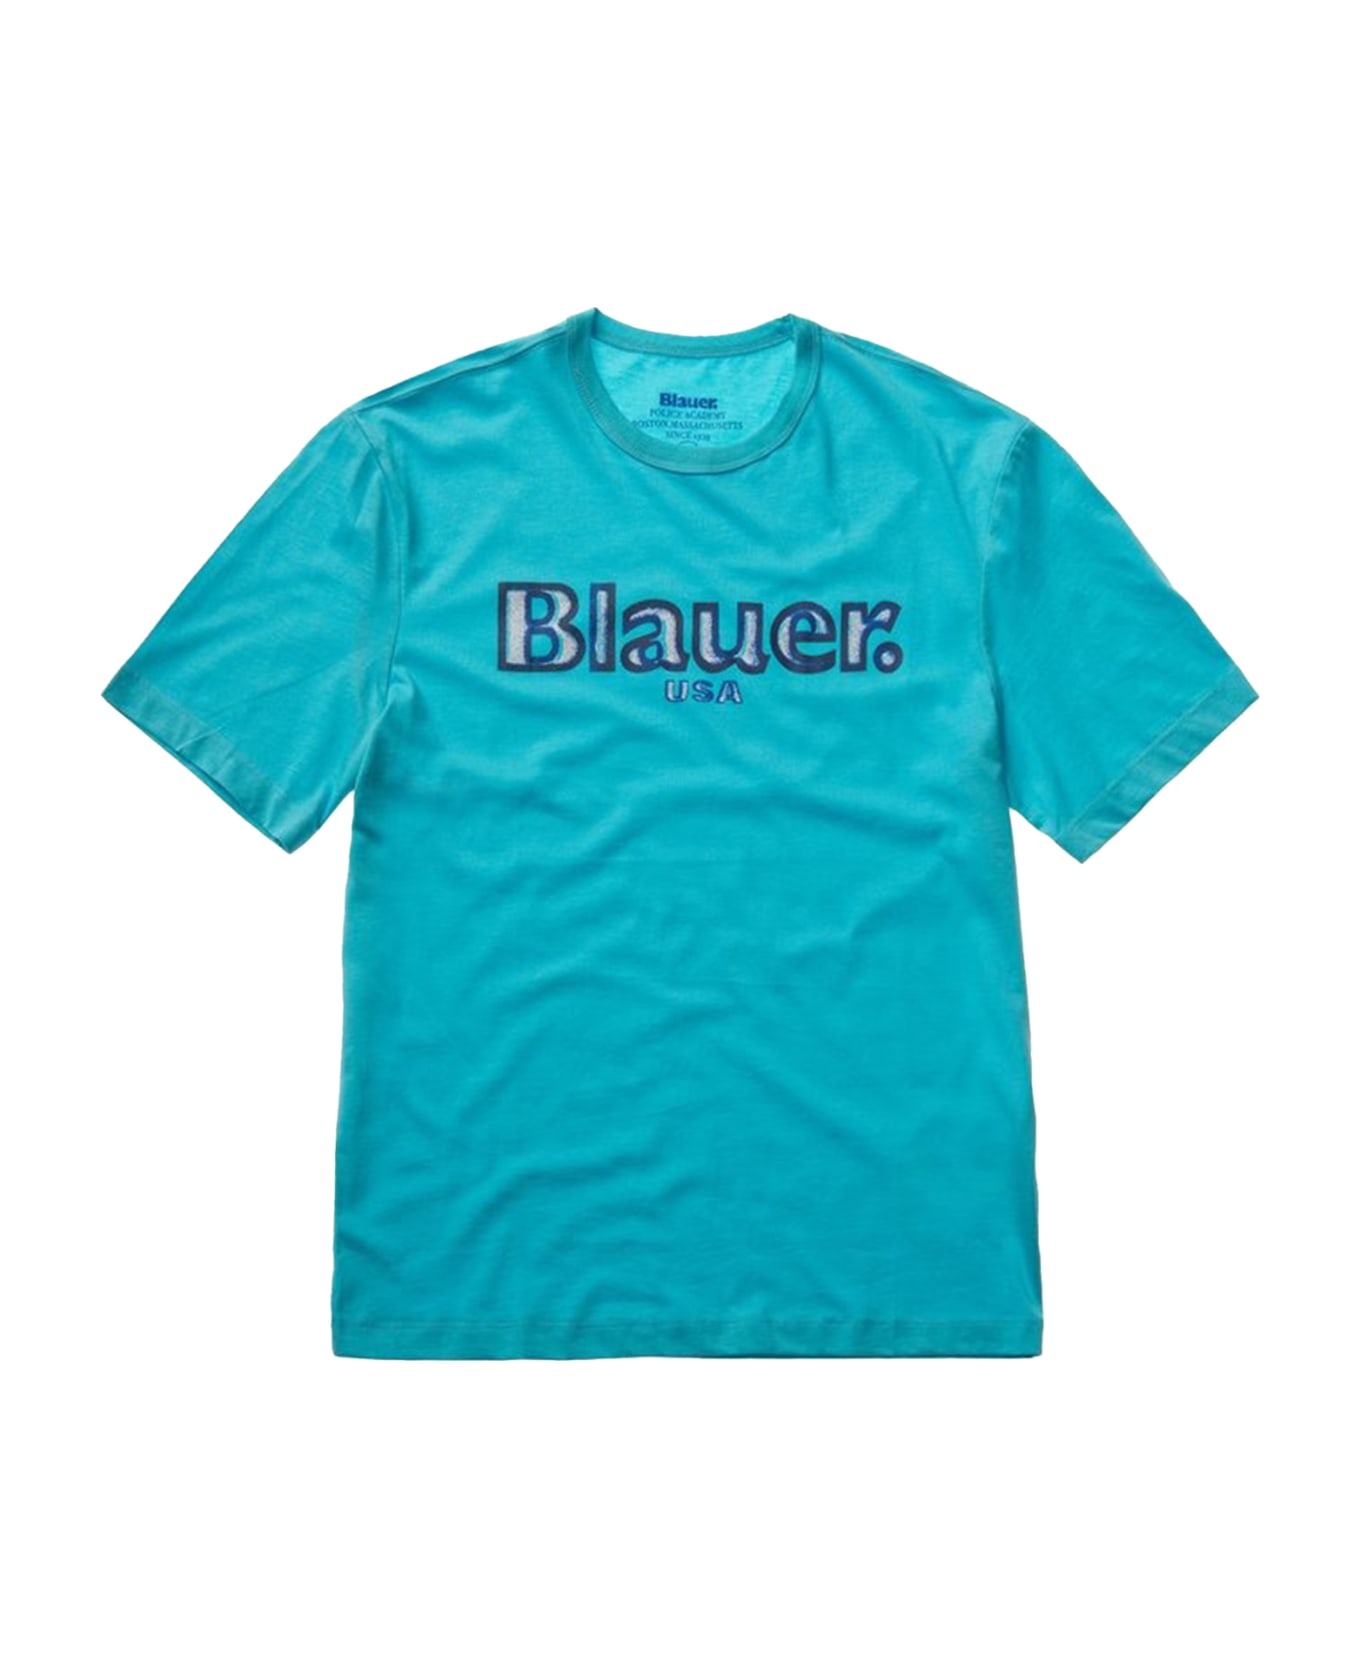 Blauer Light Blue Crew Neck T-shirt In Cotton - TURCHESE